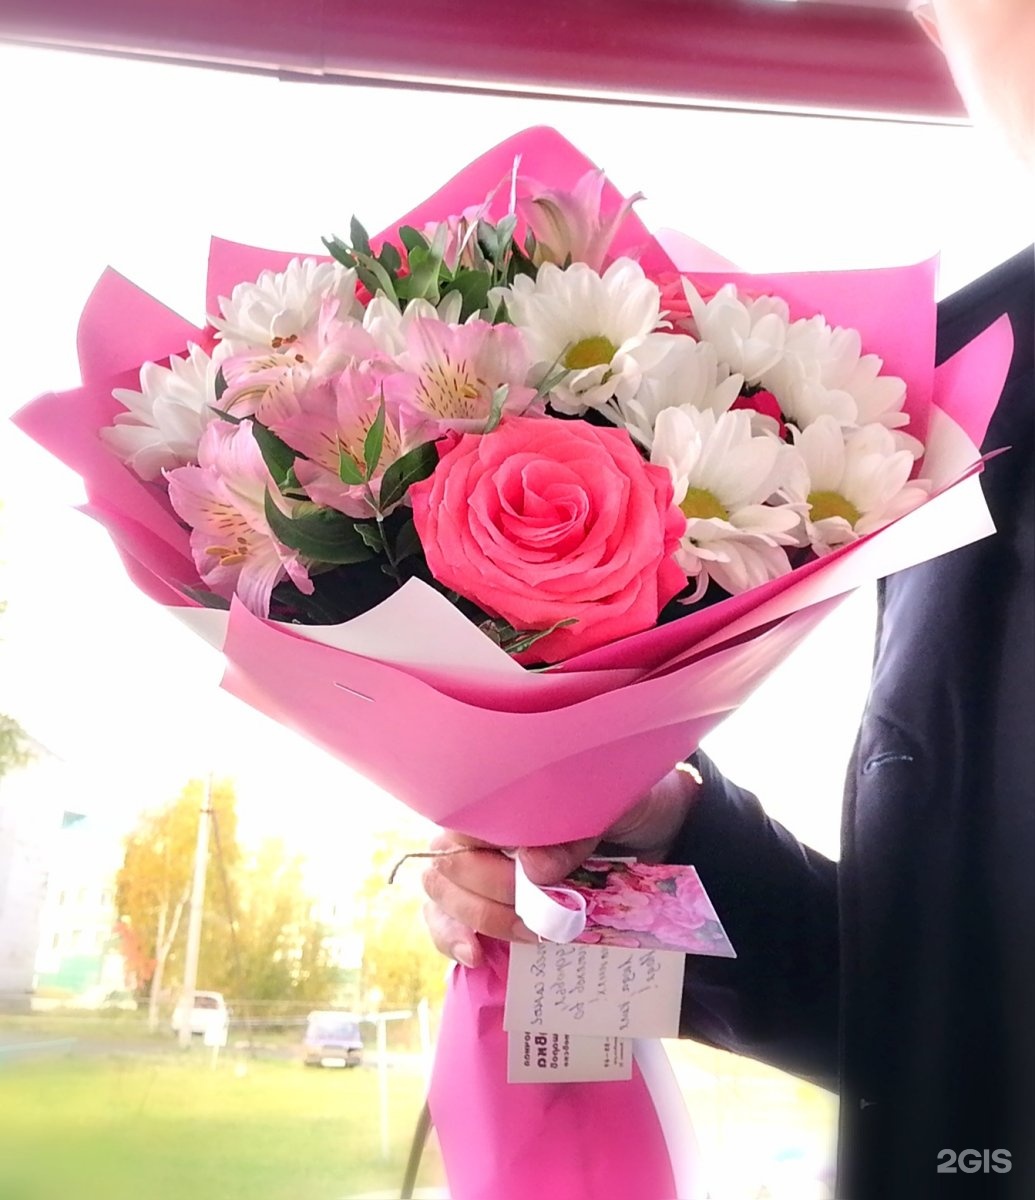 Дари цветы магазин в Городовиковске. Где в москве дарят цветы